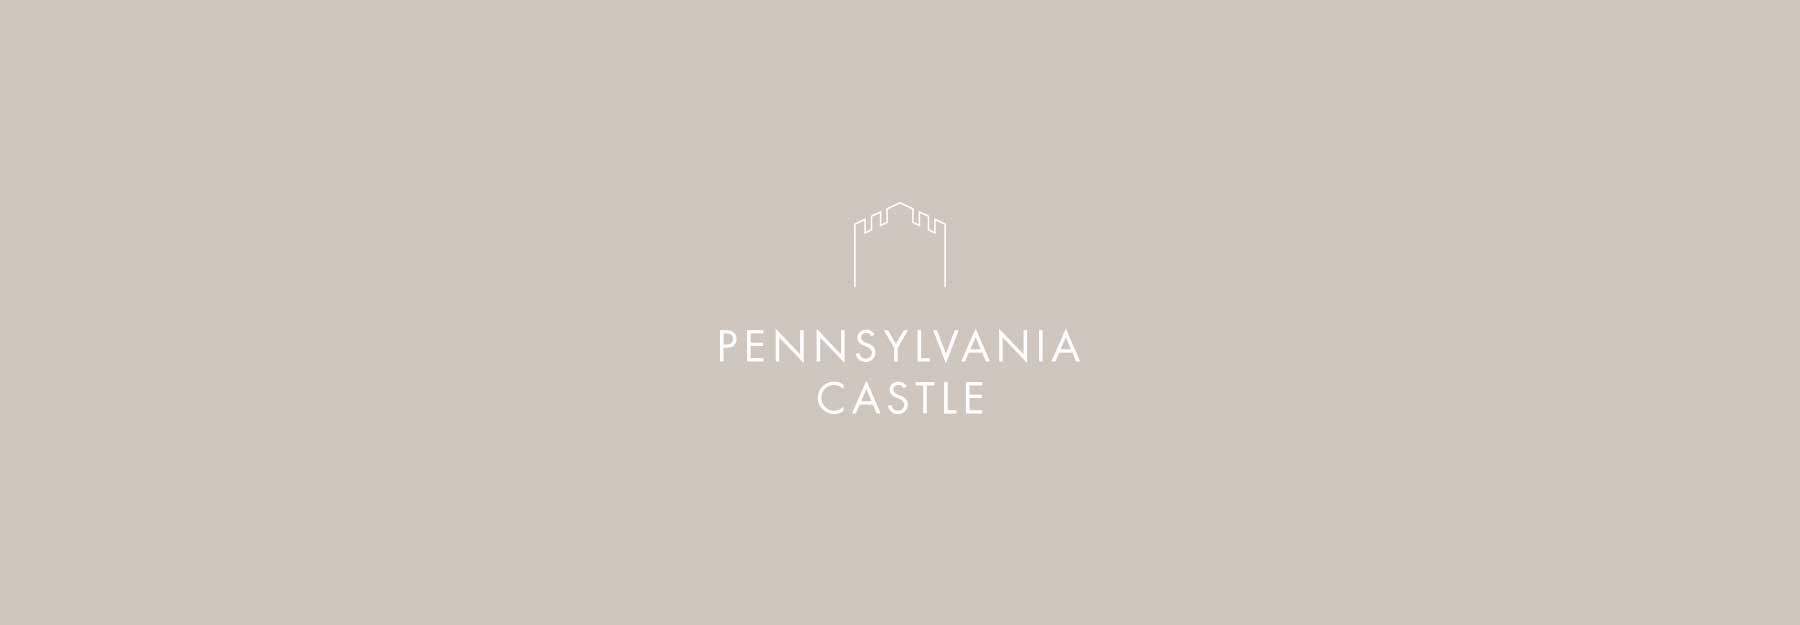 Penn-Castle-1-logo